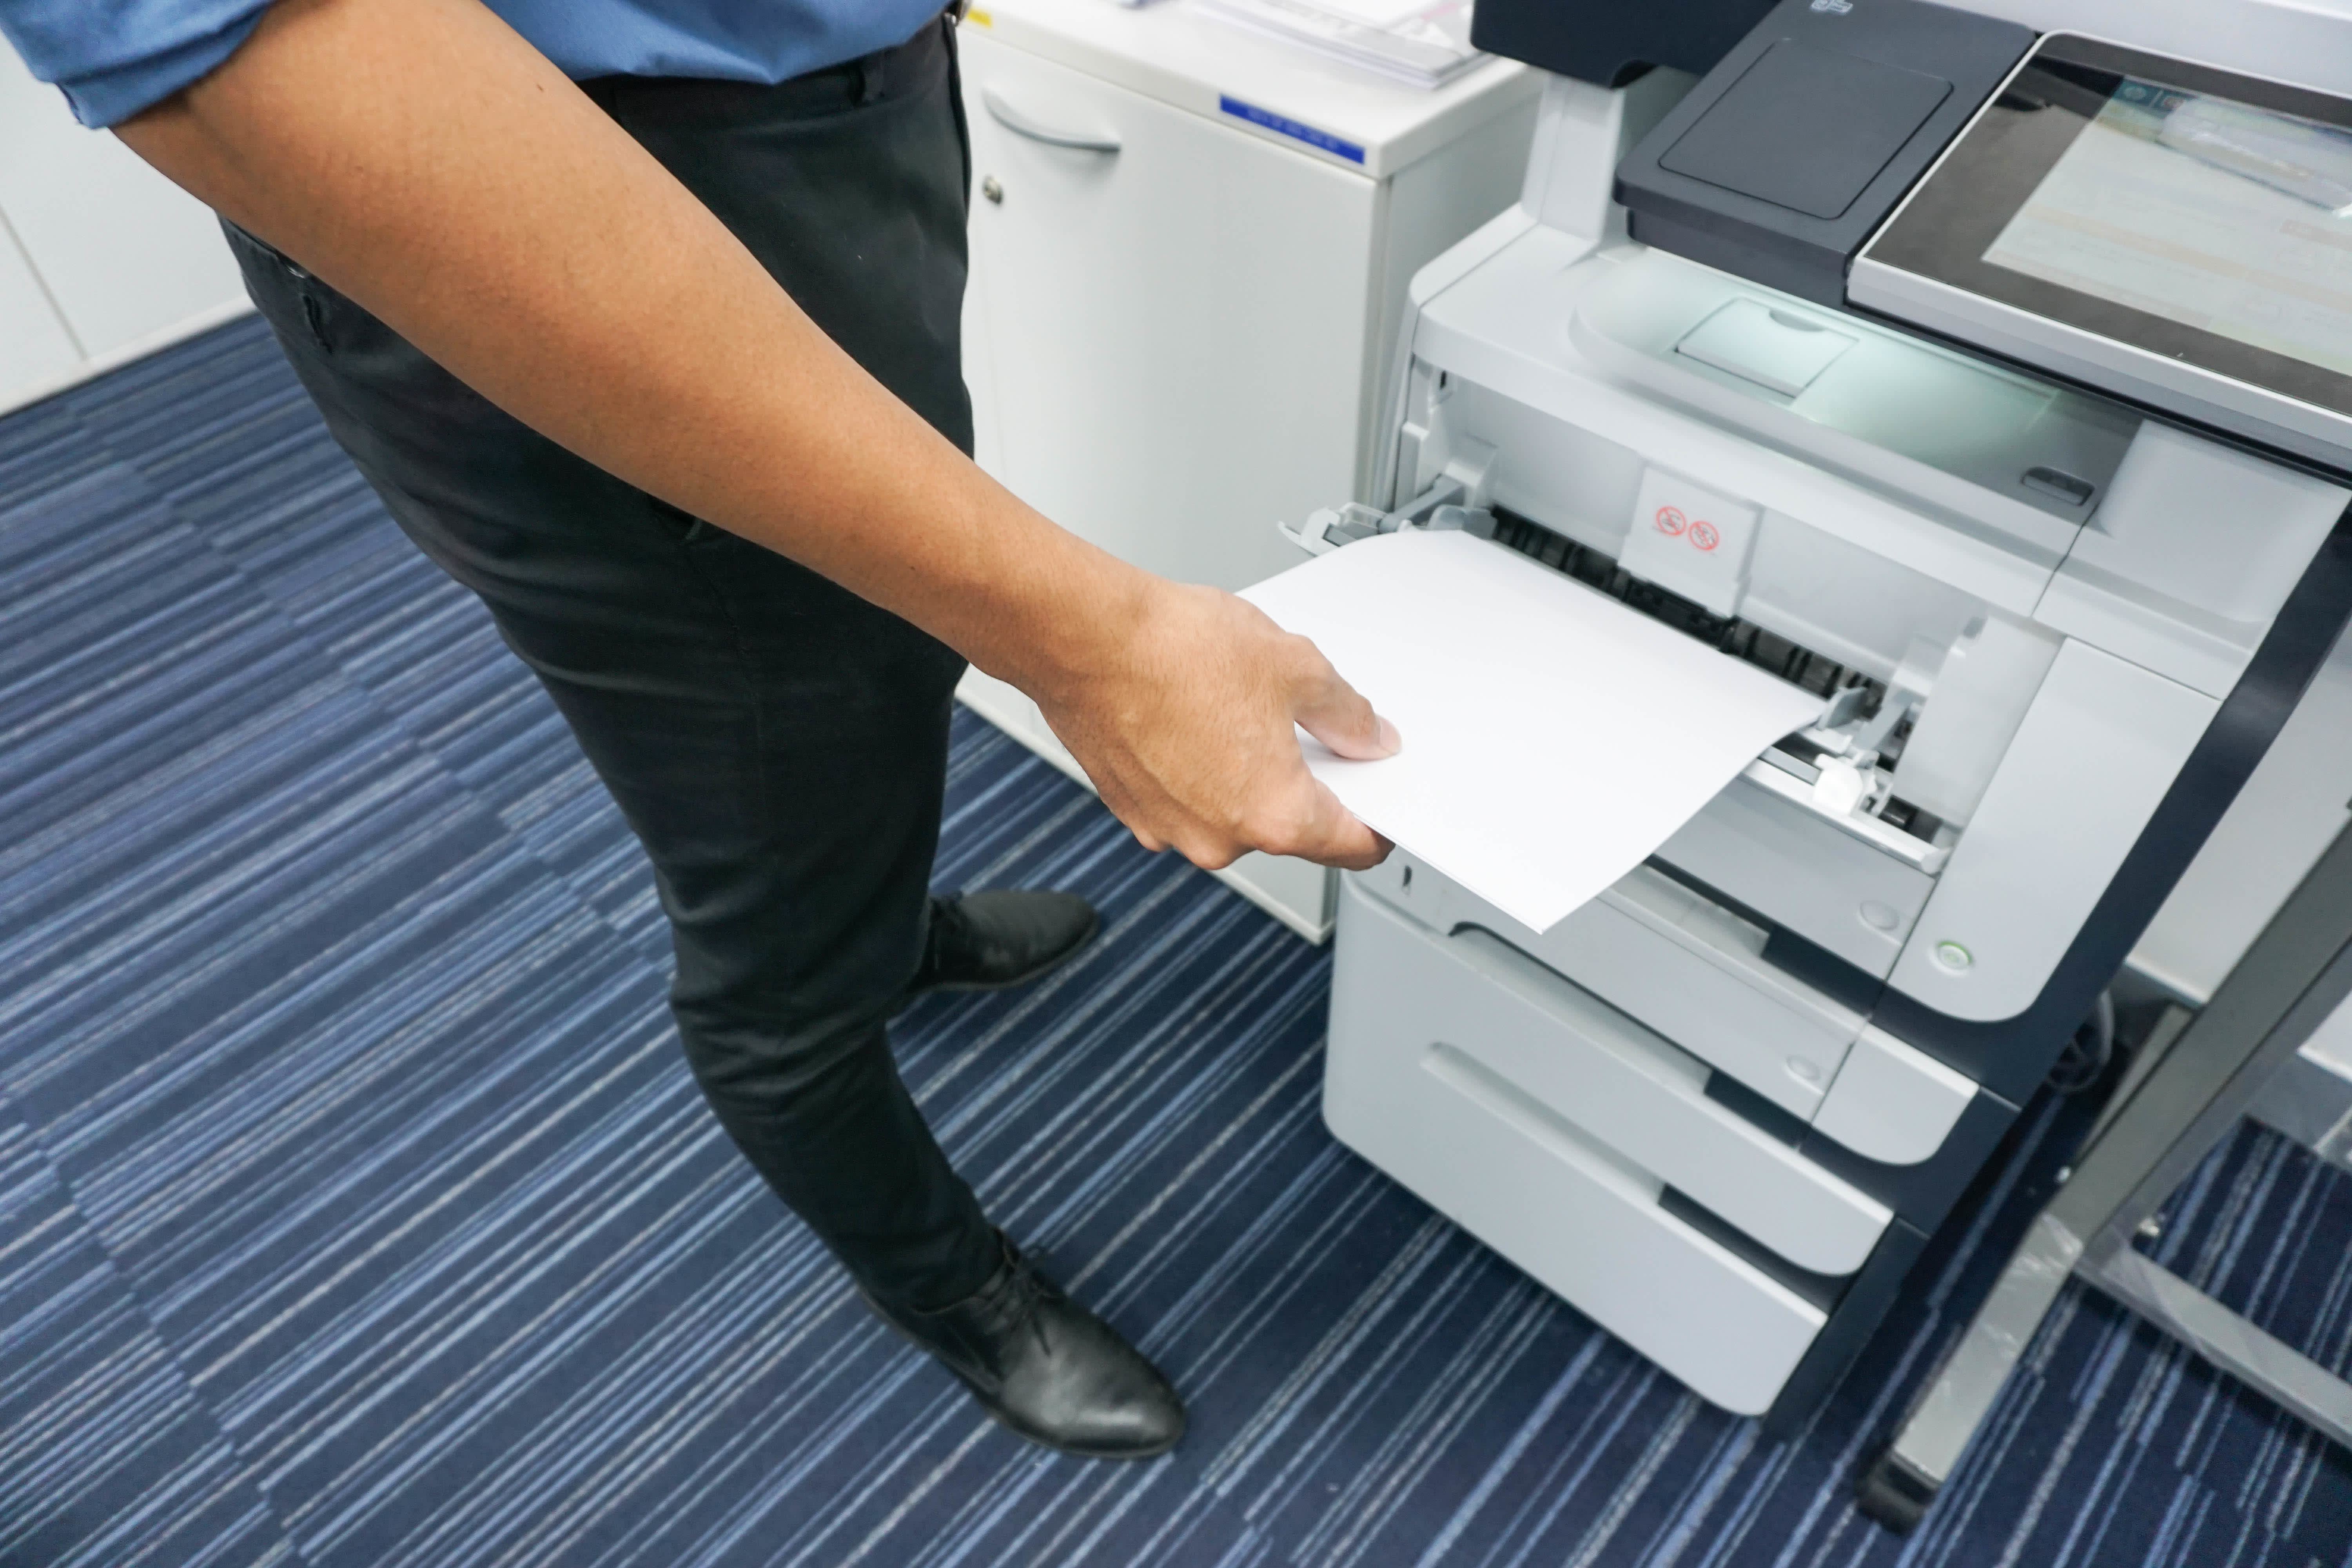 Средства печати документов. Mf264dw термопленка. Принтер офисный. Офисная бумага для принтера. Принтер для печатания документов и бумаг.